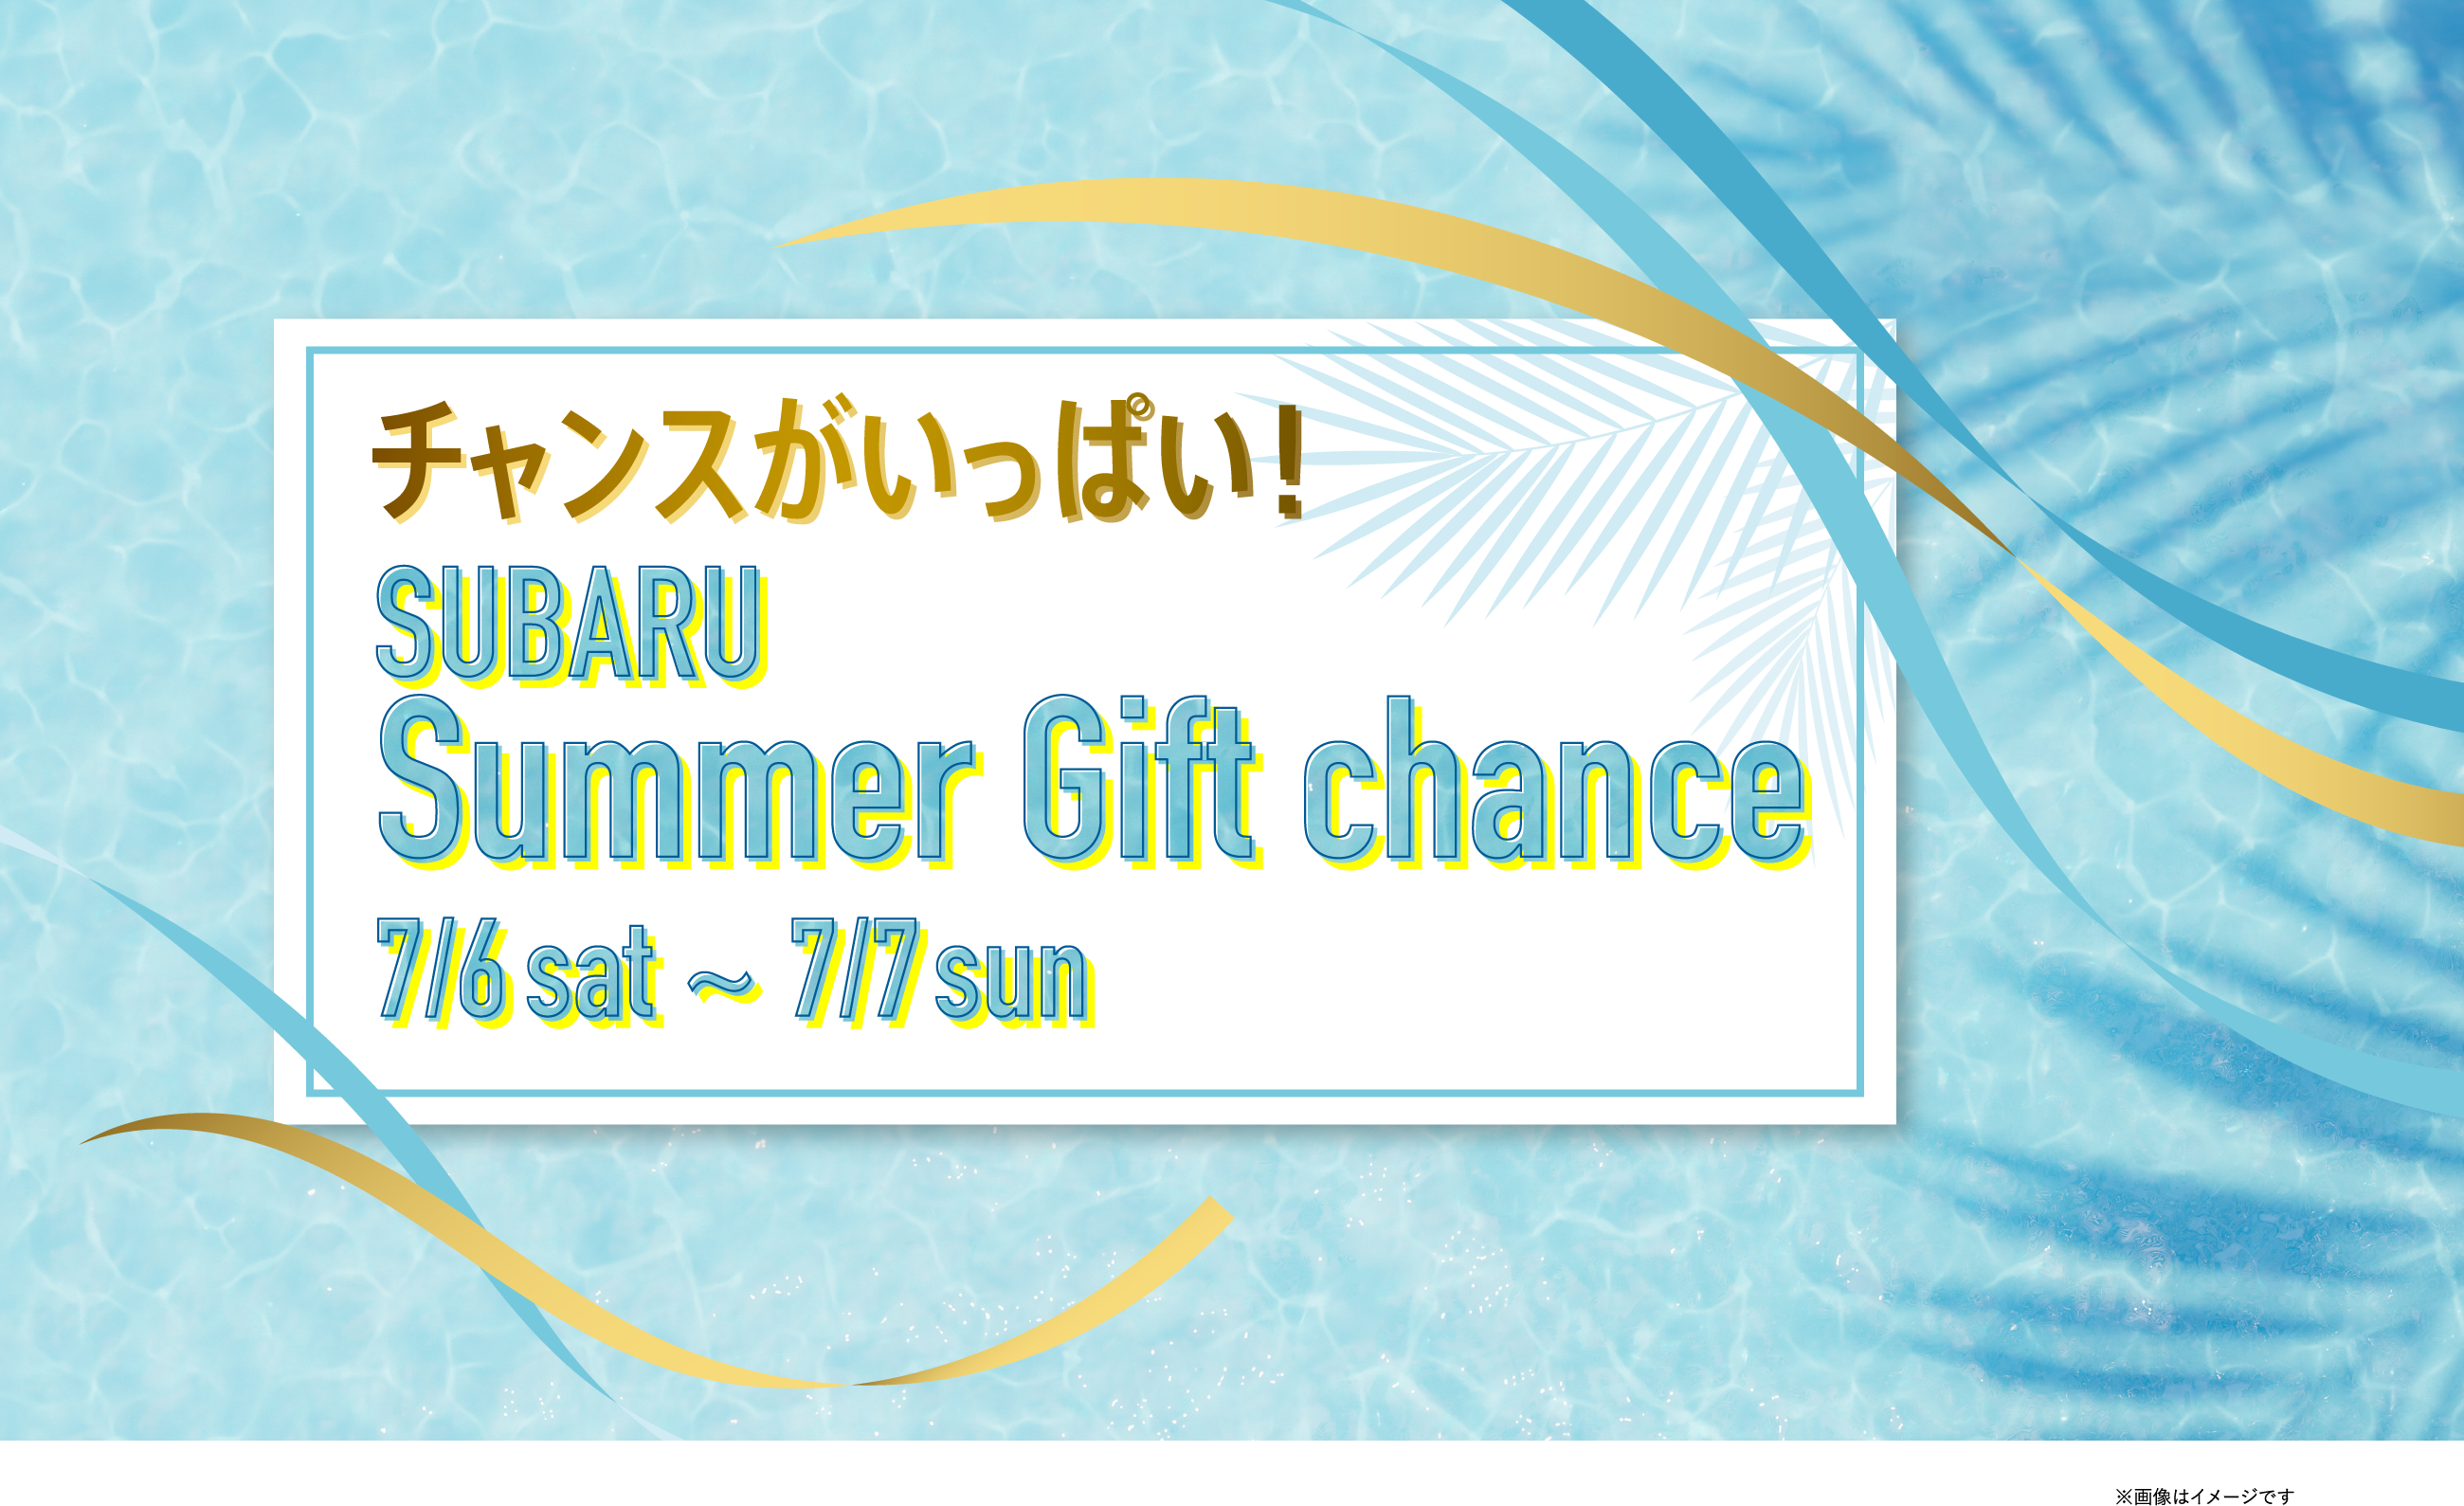 チャンスがいっぱい！SUBARU Summer Gift chance 7/6sat〜7/7sun